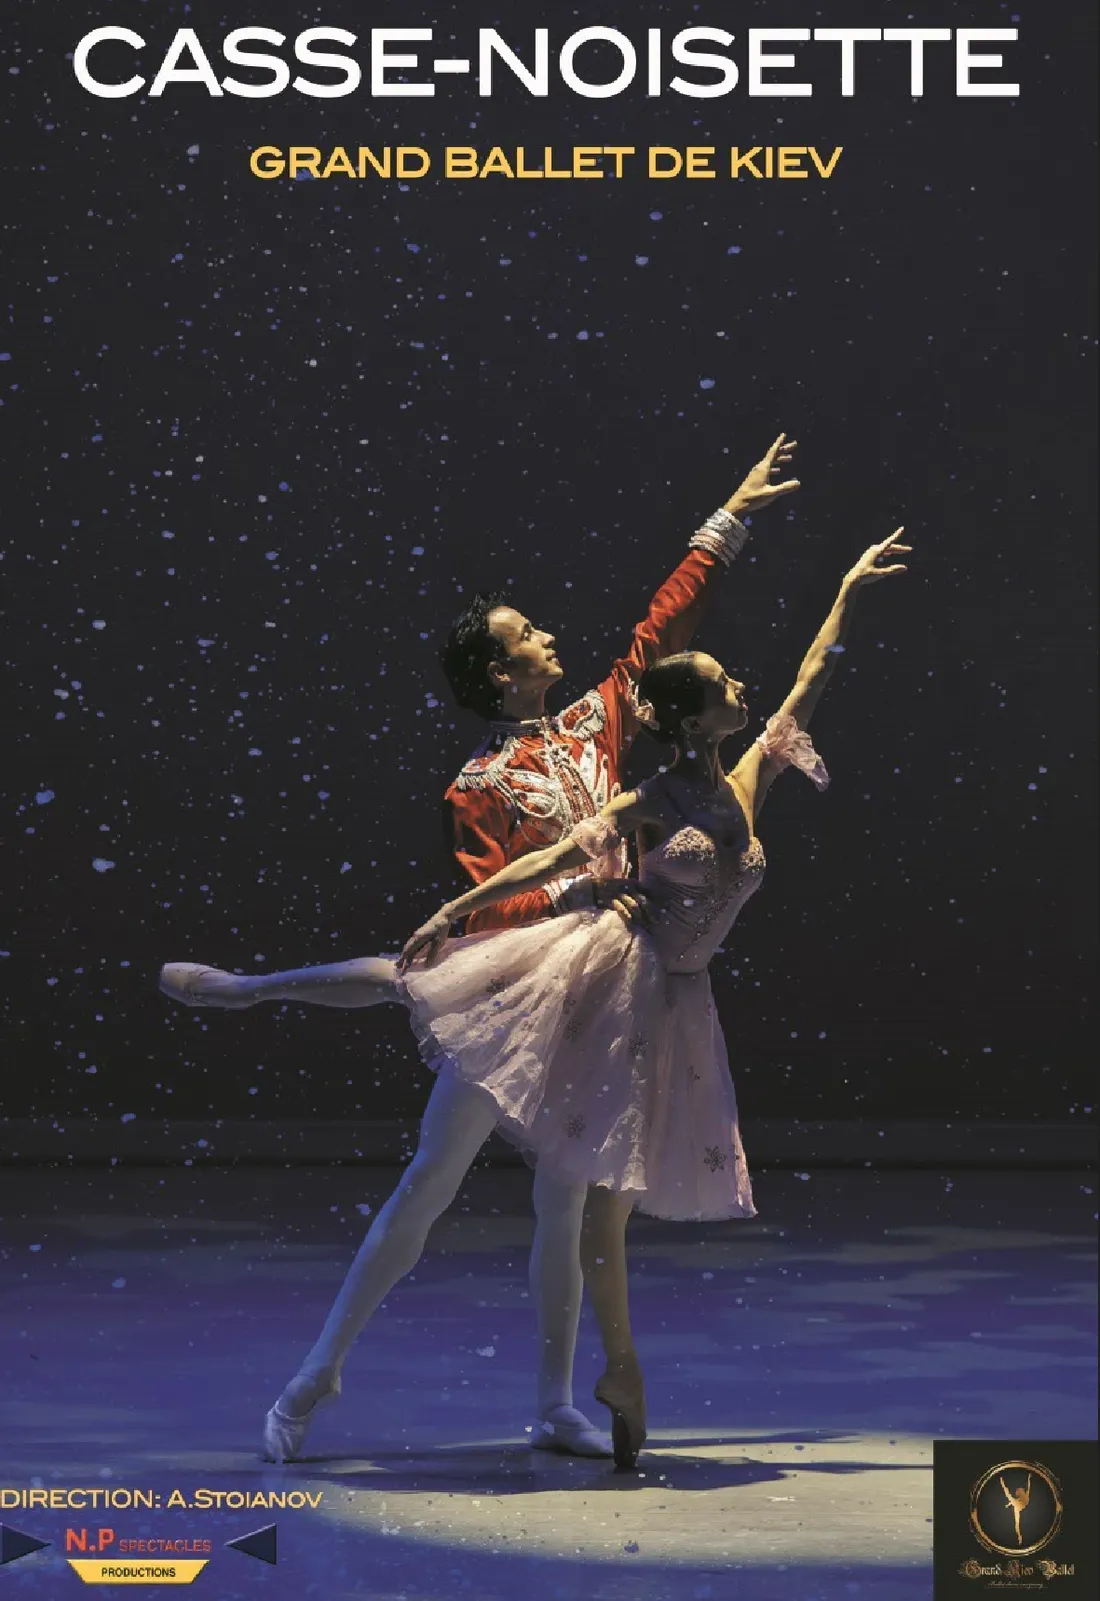 CASSE NOISETTE Par Le Grand Ballet de Kiev